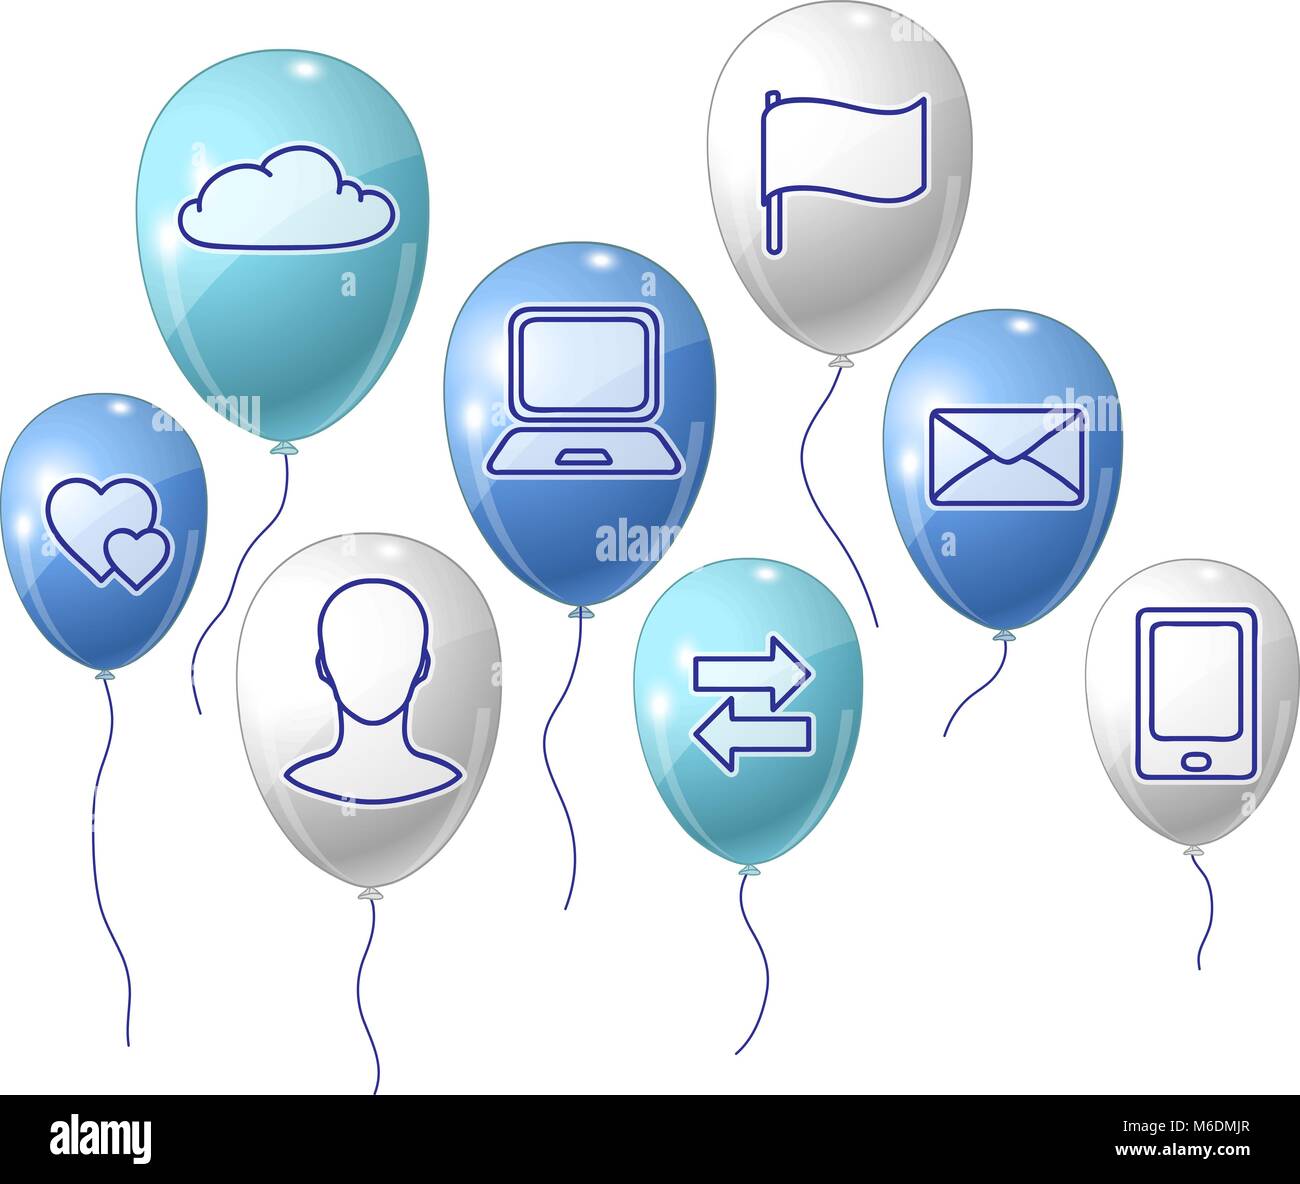 Soziale Medien, Kommunikation Hintergrund mit fliegenden Ballons Stock Vektor